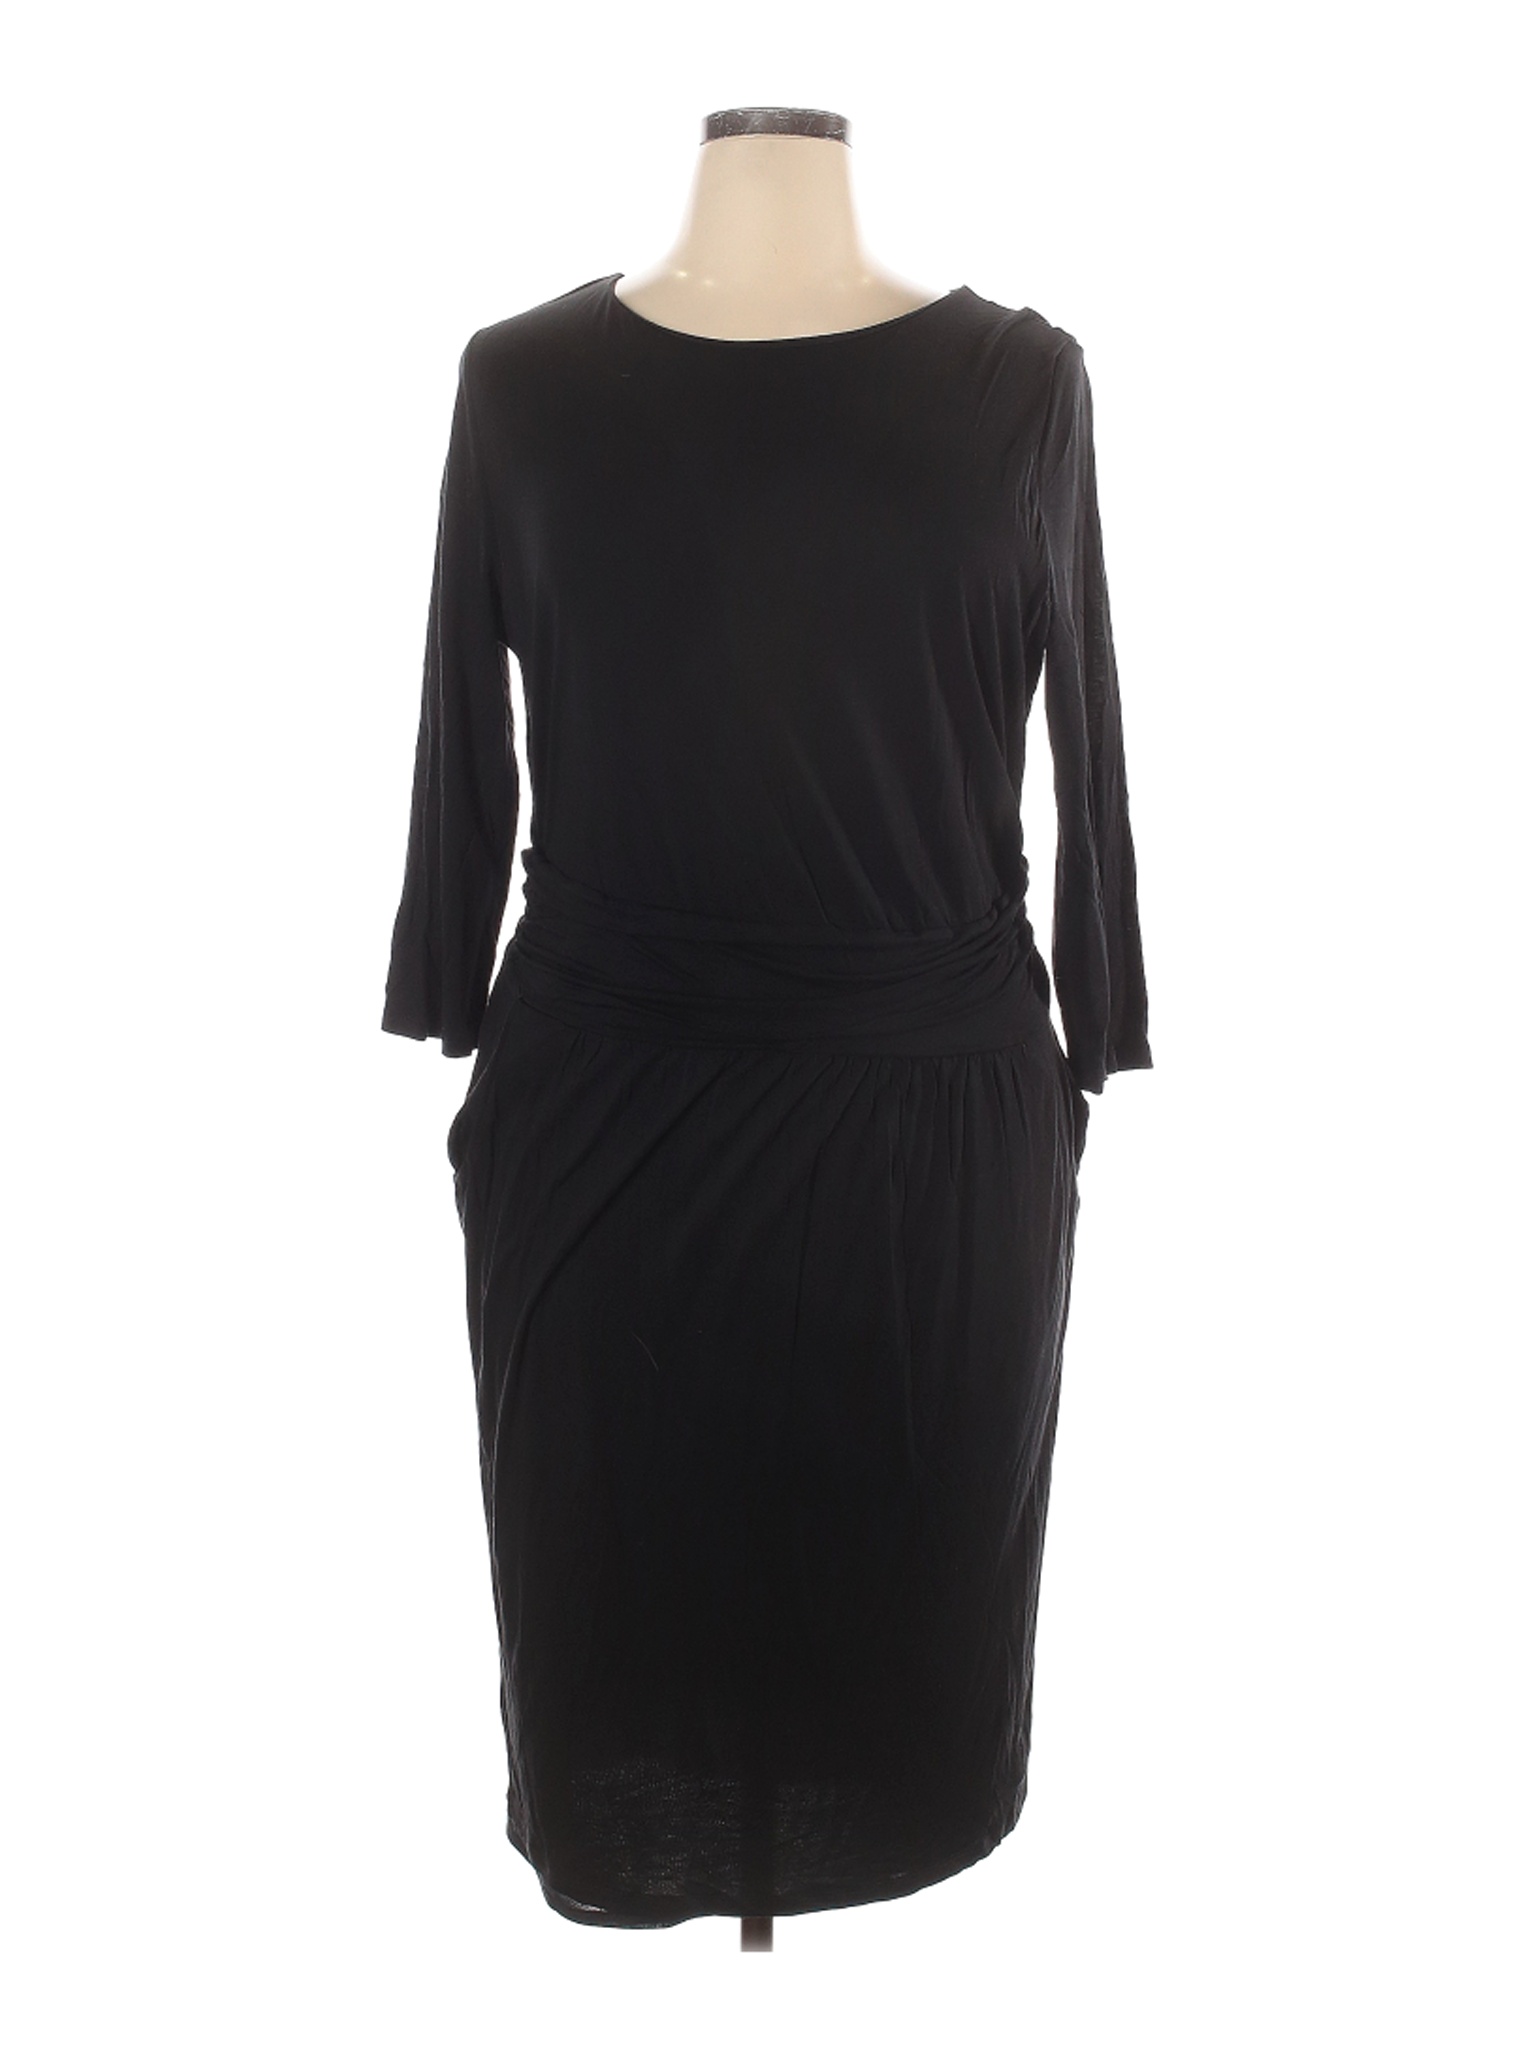 Boden Women Black Casual Dress 16 | eBay